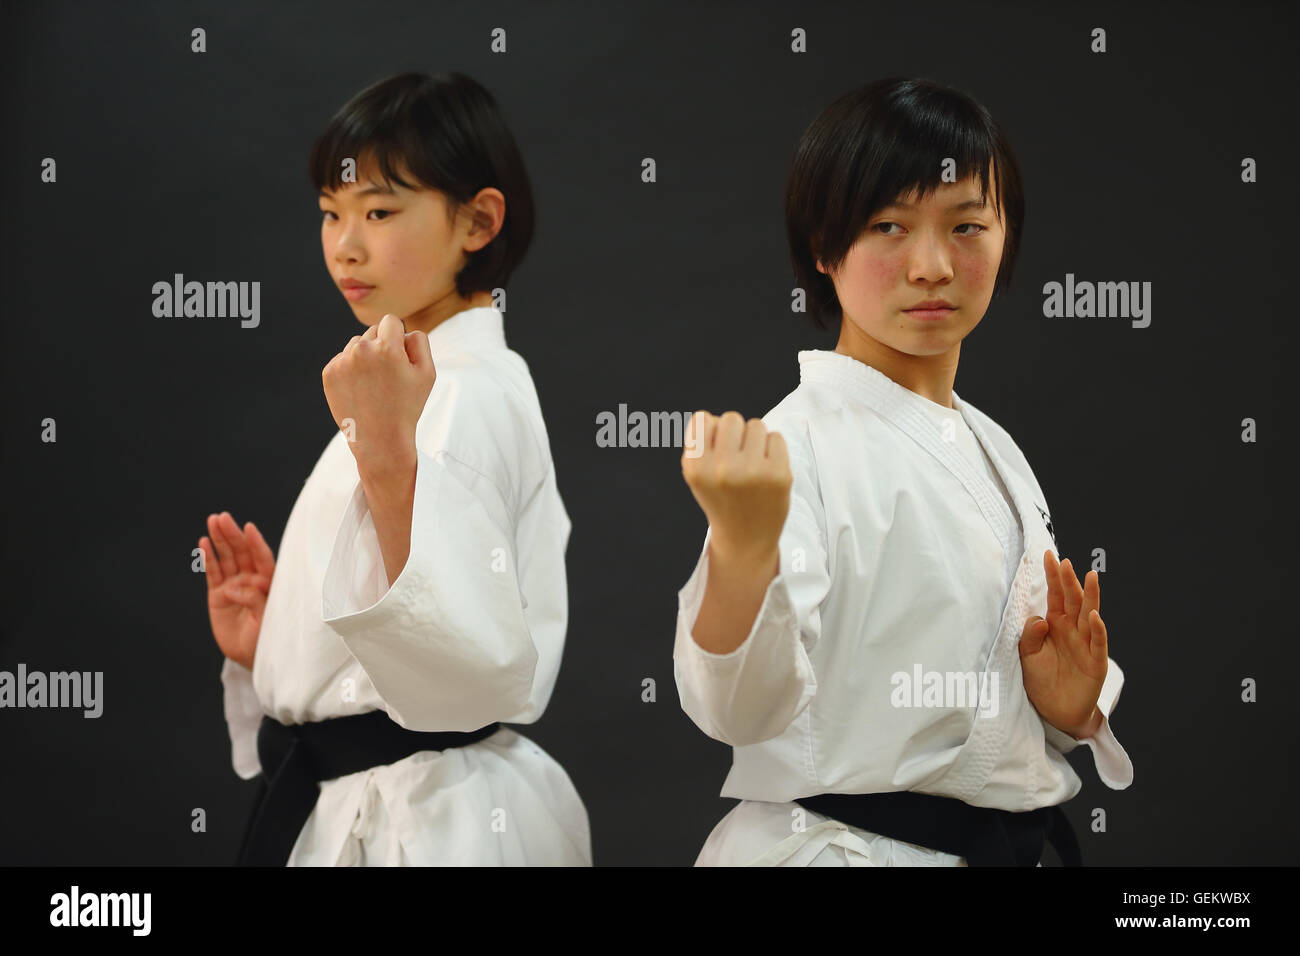 Los niños japoneses de karate uniforme sobre fondo negro Foto de stock